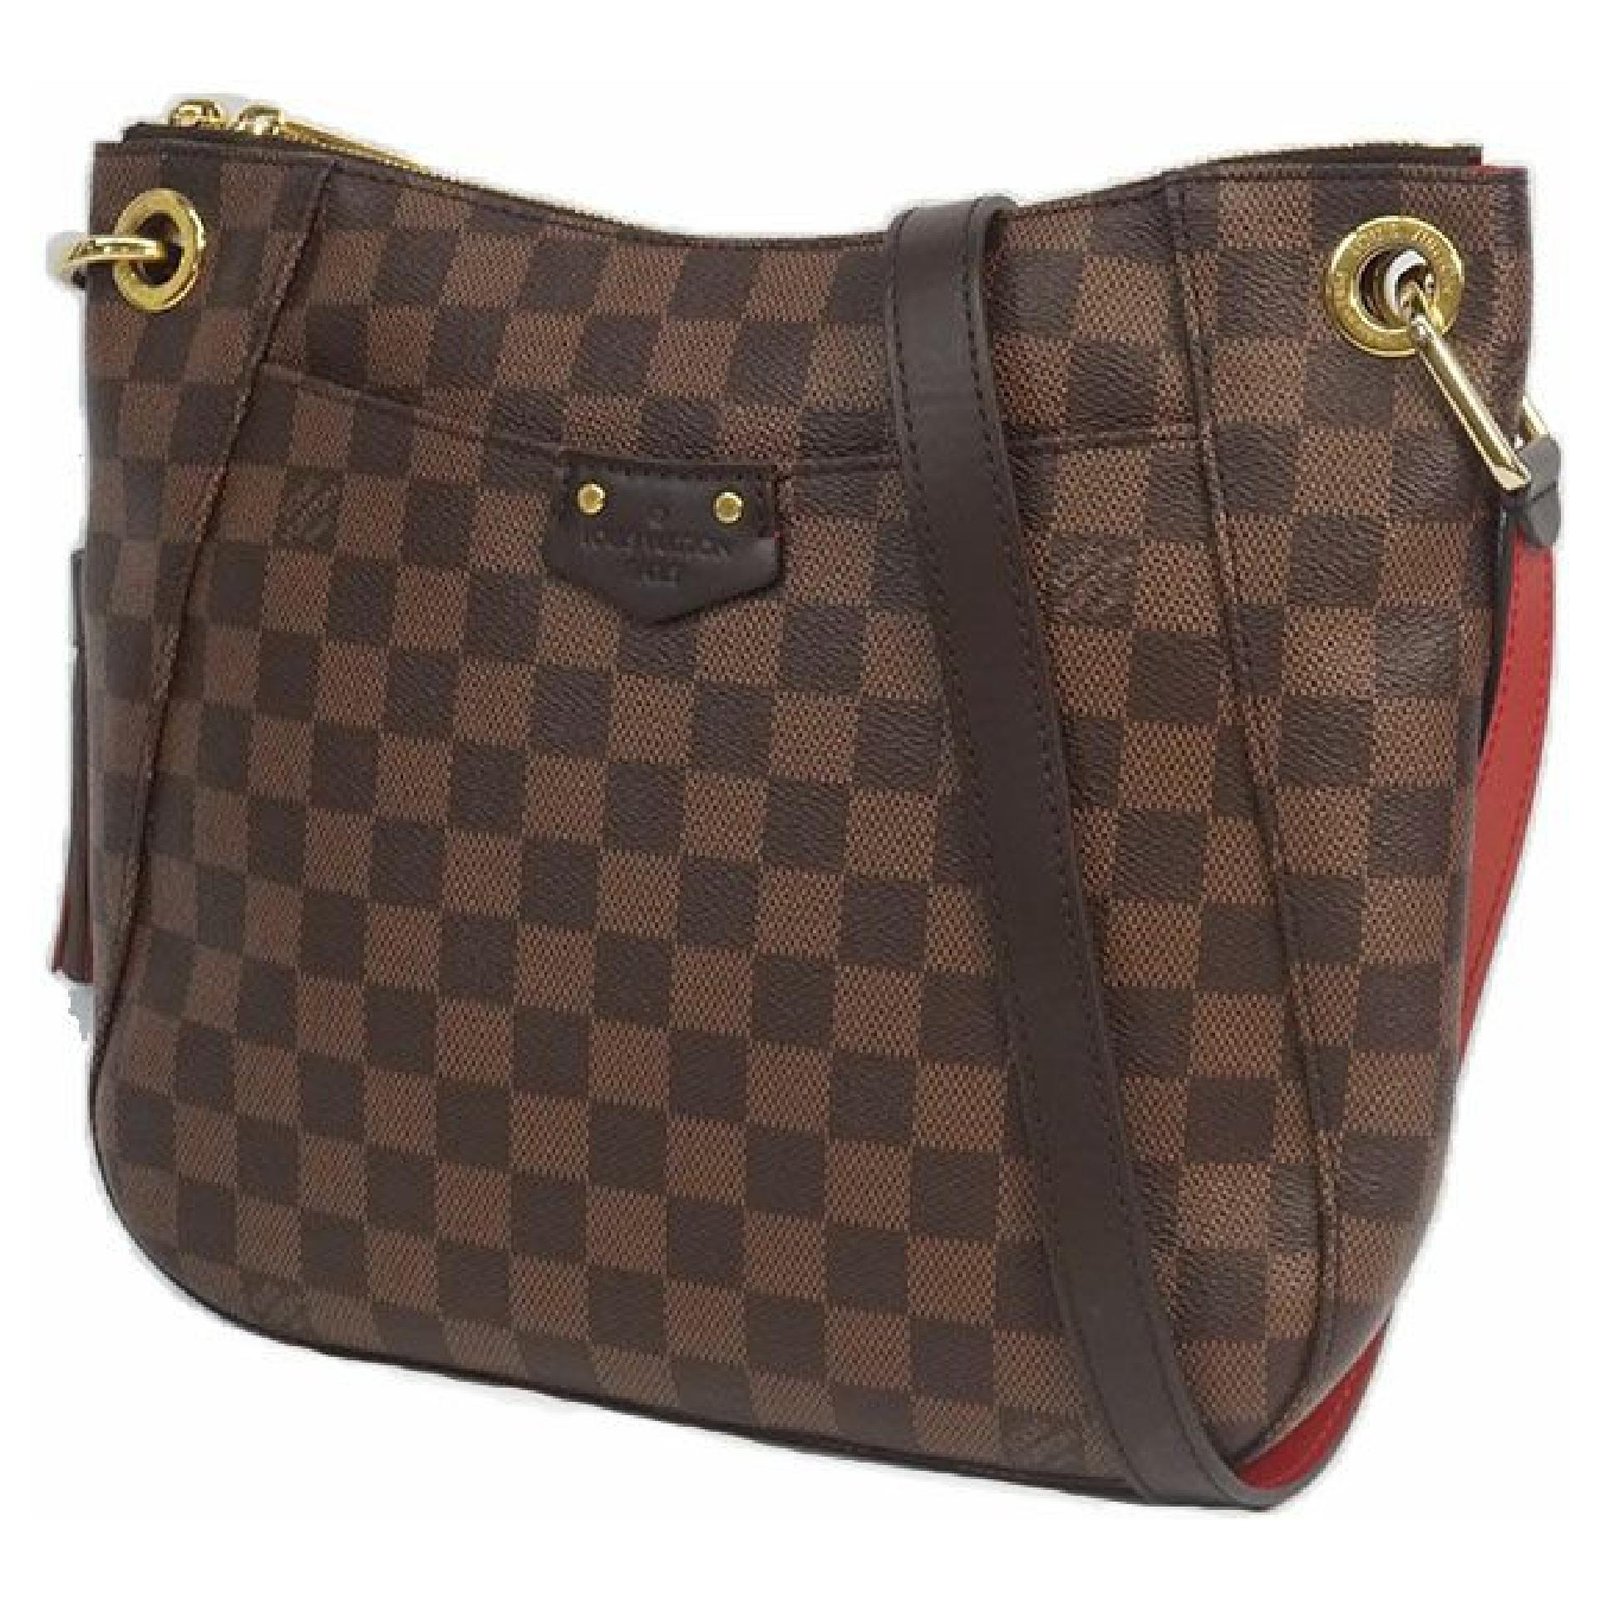 Louis Vuitton South Bank Besace N42230, Women's Fashion, Bags